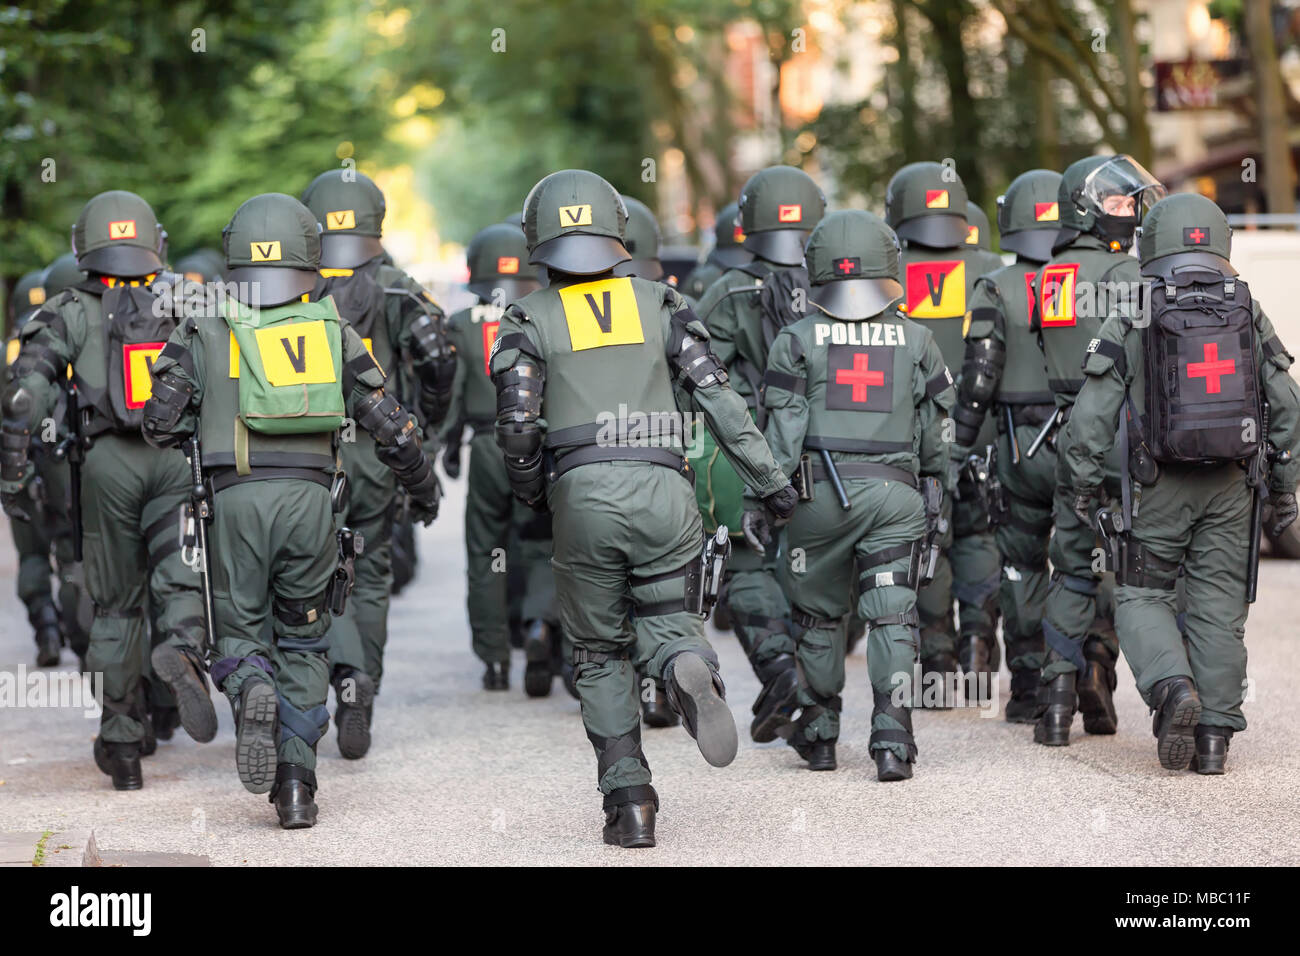 Eine Beweissicherungs- und Festnahmeeinheit der Polizei Baden-Württemberg im Einsatz während des G20-Gipfels in Amburgo Foto Stock